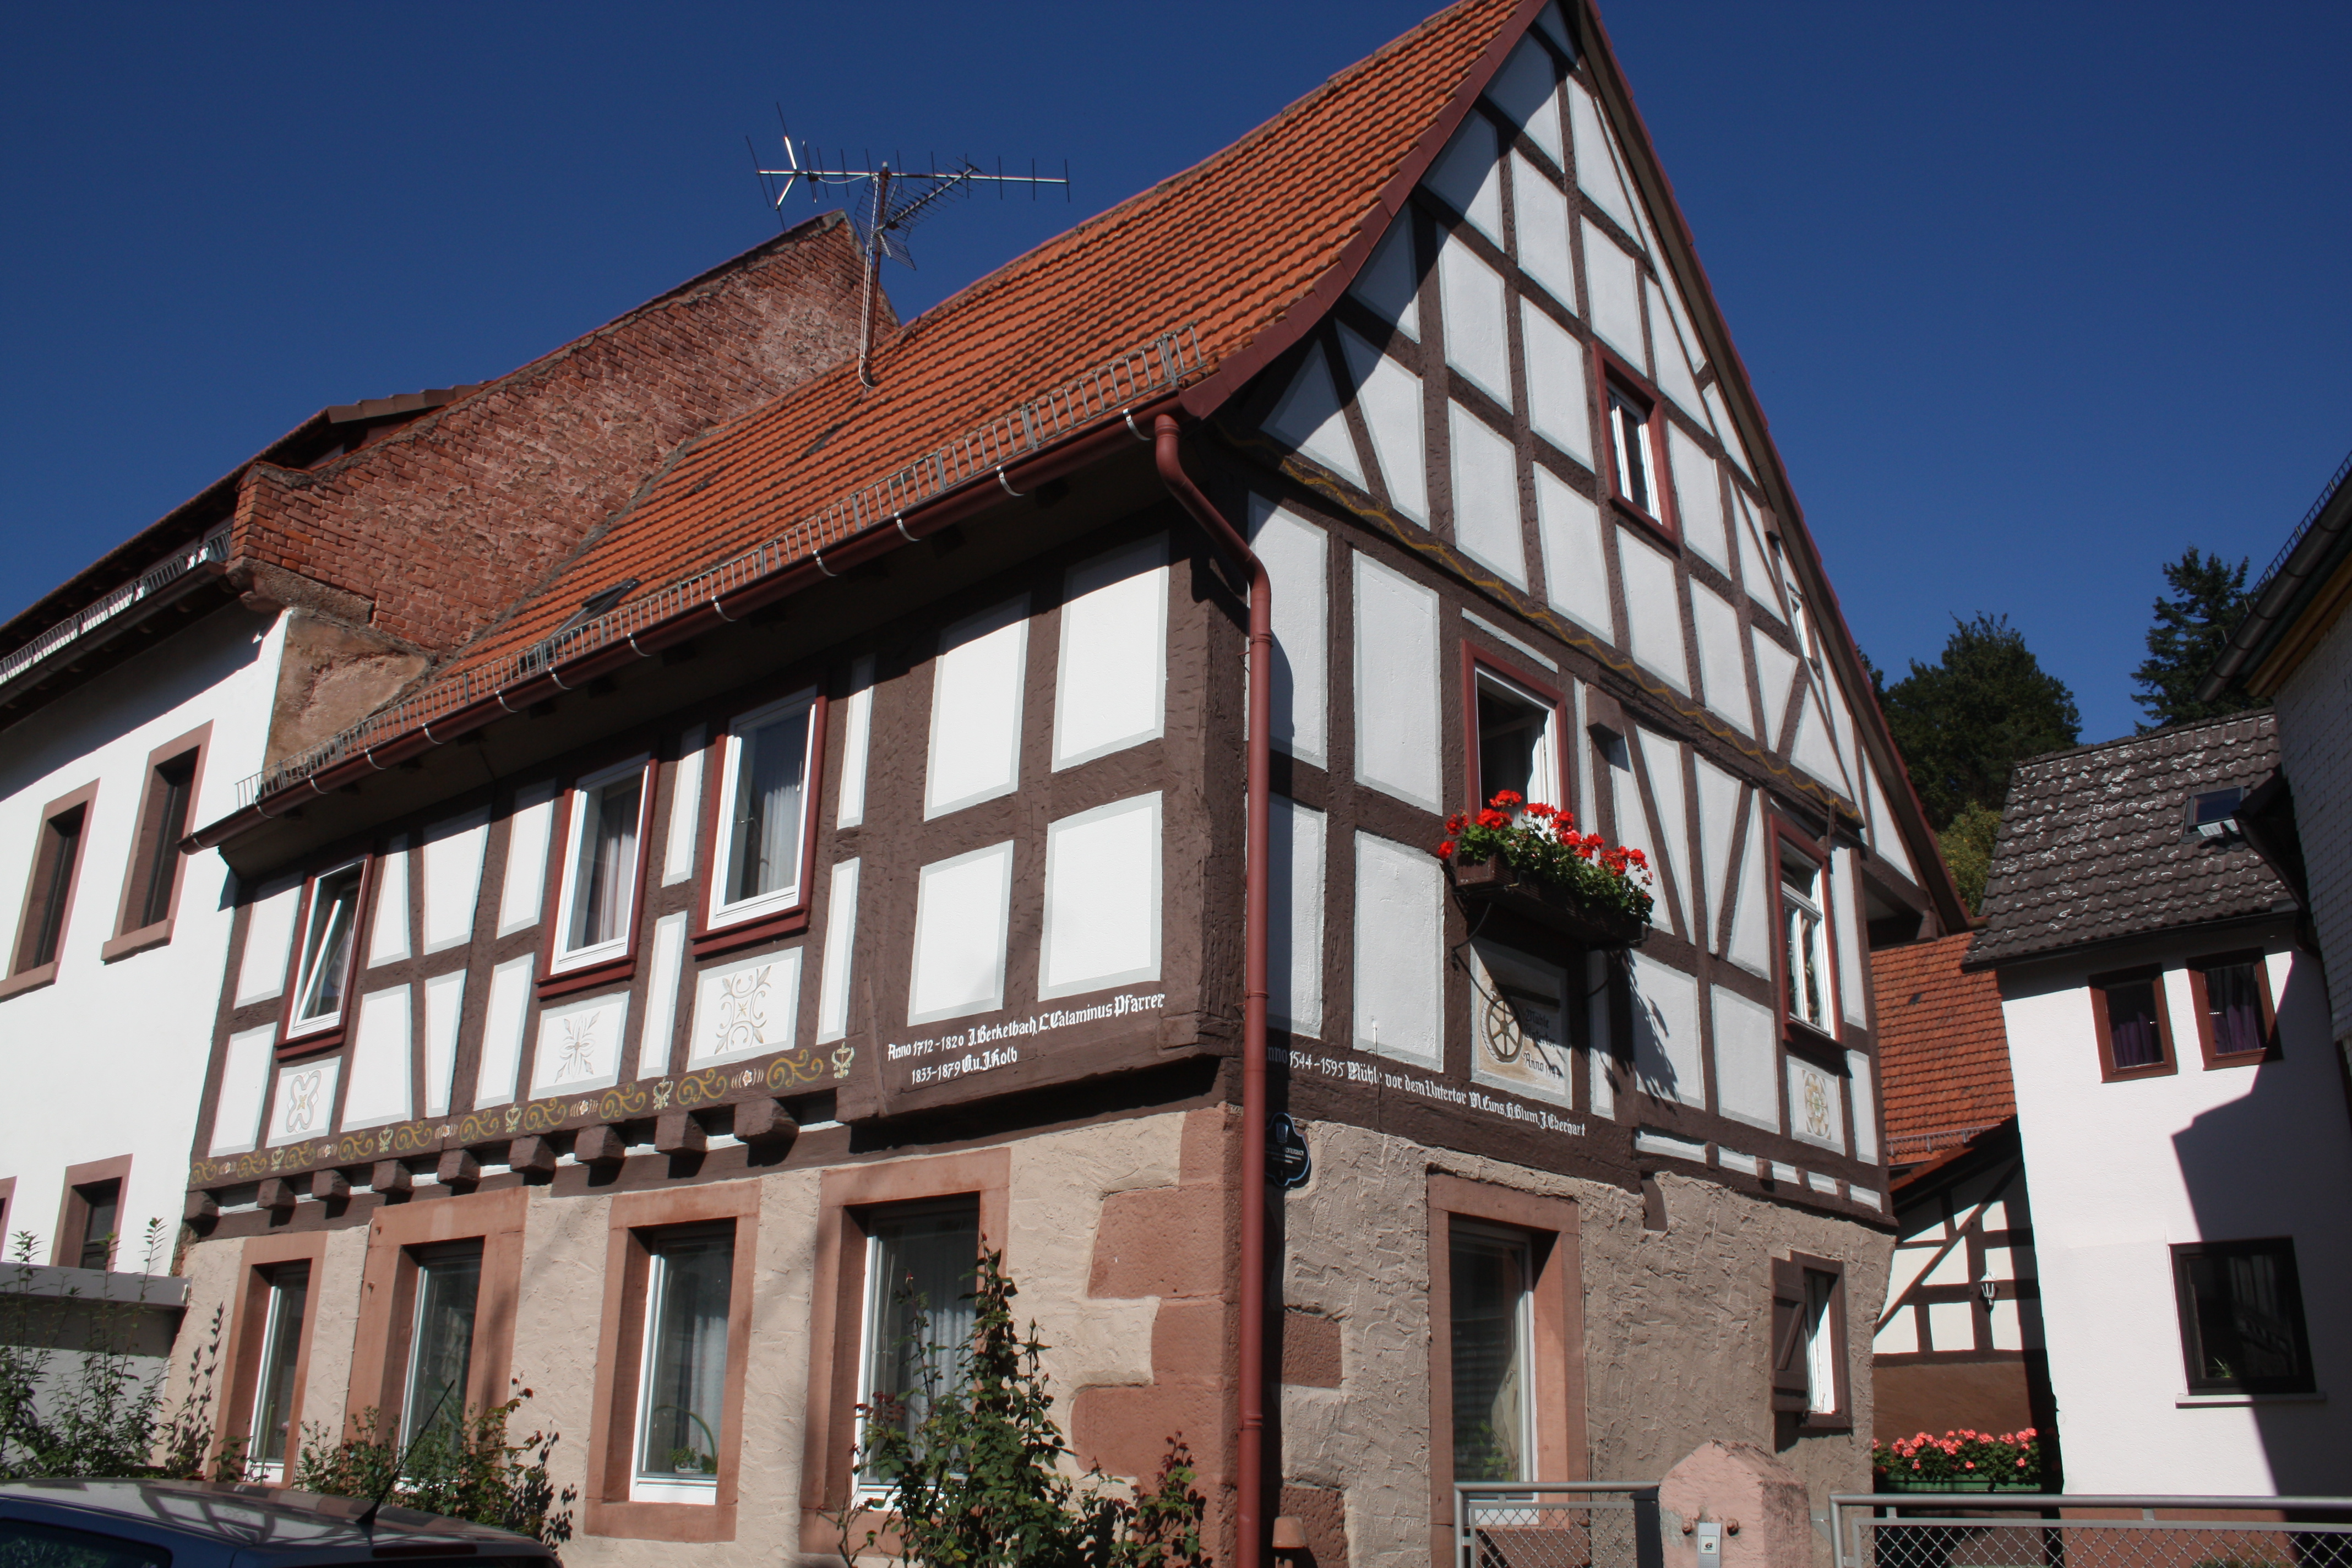 Die gut restaurierten, historischen Fachwerkhäuser lassen sich bei einem Altstadt-Spaziergang ansehen und teilweise lesen. Lesen, da einige der Fachwerkhäuser lesbare Inschriften tragen oder ergänzende Info-Tafeln.